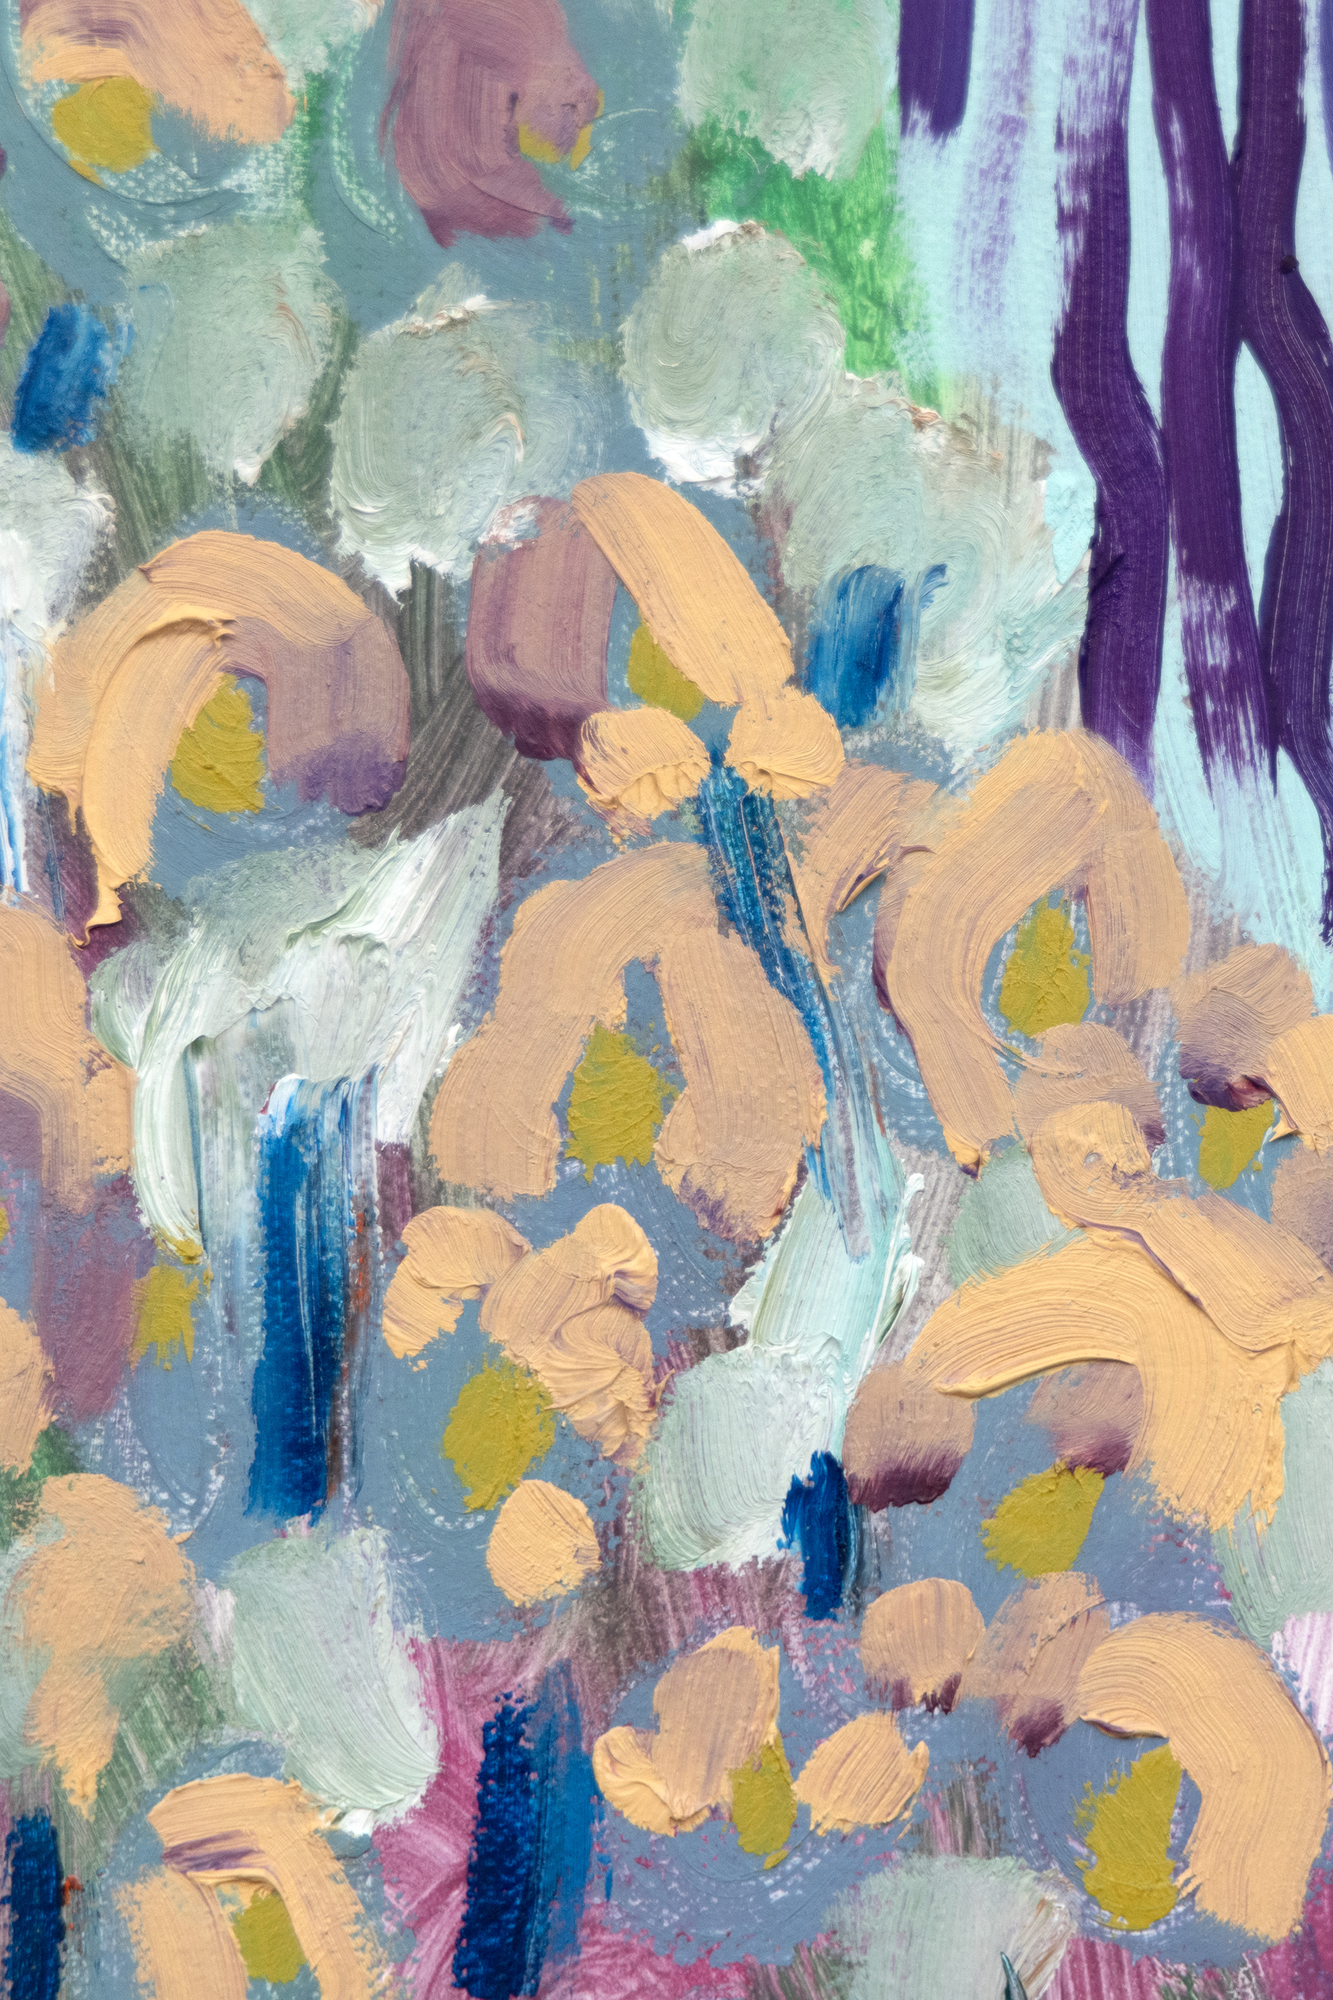 שרה יוז, שנולדה באטלנטה בשנת 1981 ומתגוררת בברוקלין, ידועה בגישתה הייחודית לציור נוף, המשלבת השפעות היסטוריות עם רגישויות עכשוויות. פלטת הצבעים הצוהלת שלה מזכירה מאסטרים כמו אנרי מאטיס, המועברת עם הנועזות החזותית המסוגננת של דייוויד הוקני תוך הכרה במסורת רחבה יותר של ציור נוף, כולל השפעות מהאר-נובו, הפוביזם והאקספרסיוניזם הגרמני. All the Pretty Faces הוא סינתזה מודרנית של תנועות אמנות היסטוריות ודימויים דיגיטליים עכשוויים, המציגים בפני הצופים עולמות שובי לב ומומצאים המגשרים בין העבר להווה. זה גם מתקשר לאחד הציטוטים הבולטים ביותר של יוז על הנופים החדשניים שלה המלאים באלמנטים פנטסטיים: &quot;לעתים קרובות חשבתי על הפרחים והעצים כעל דמויות. לפעמים אפילו גל או שמש בציור מקבלים אישיות, אז זה משתנה בהתאם לאיך שהעבודה מסתדרת&quot;.